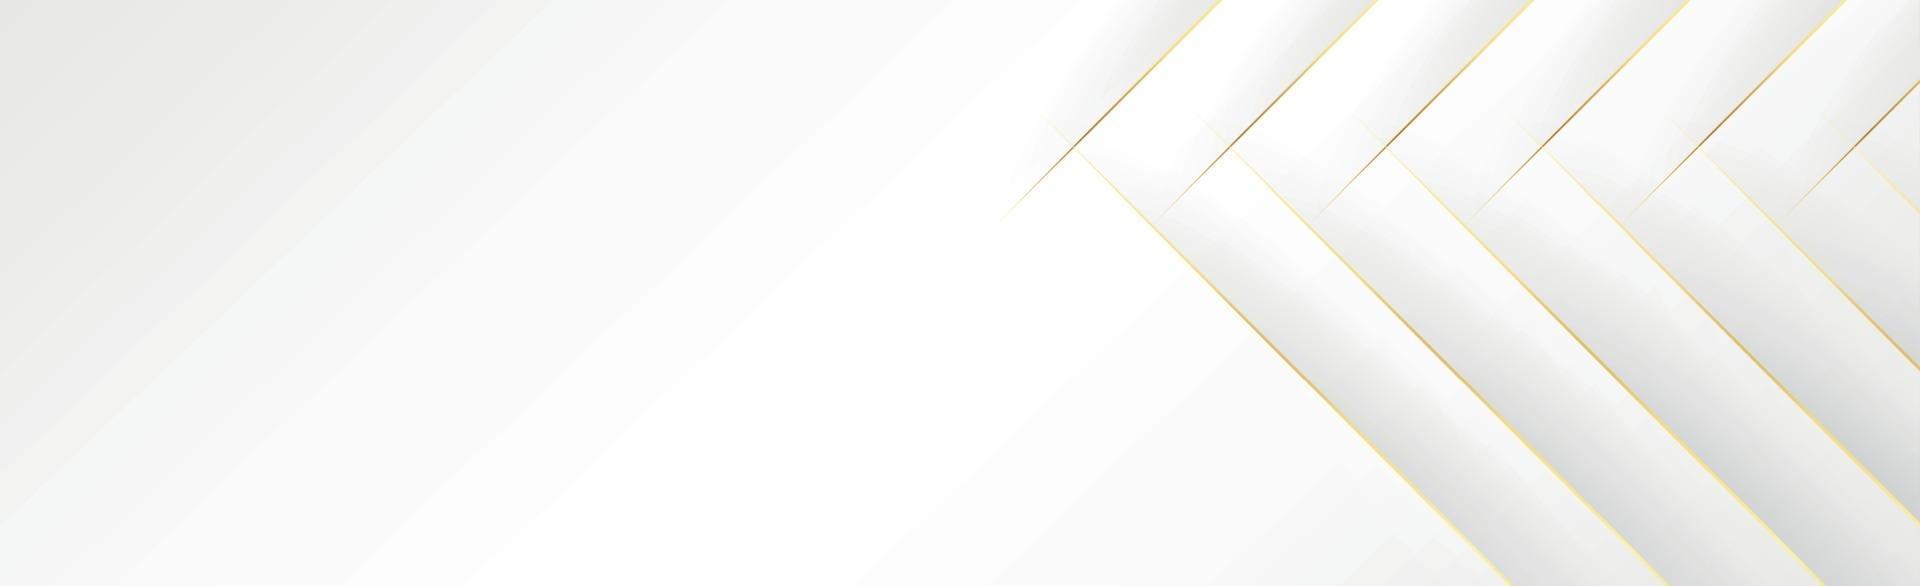 cinza abstrato - fundo branco com linhas douradas - vetor